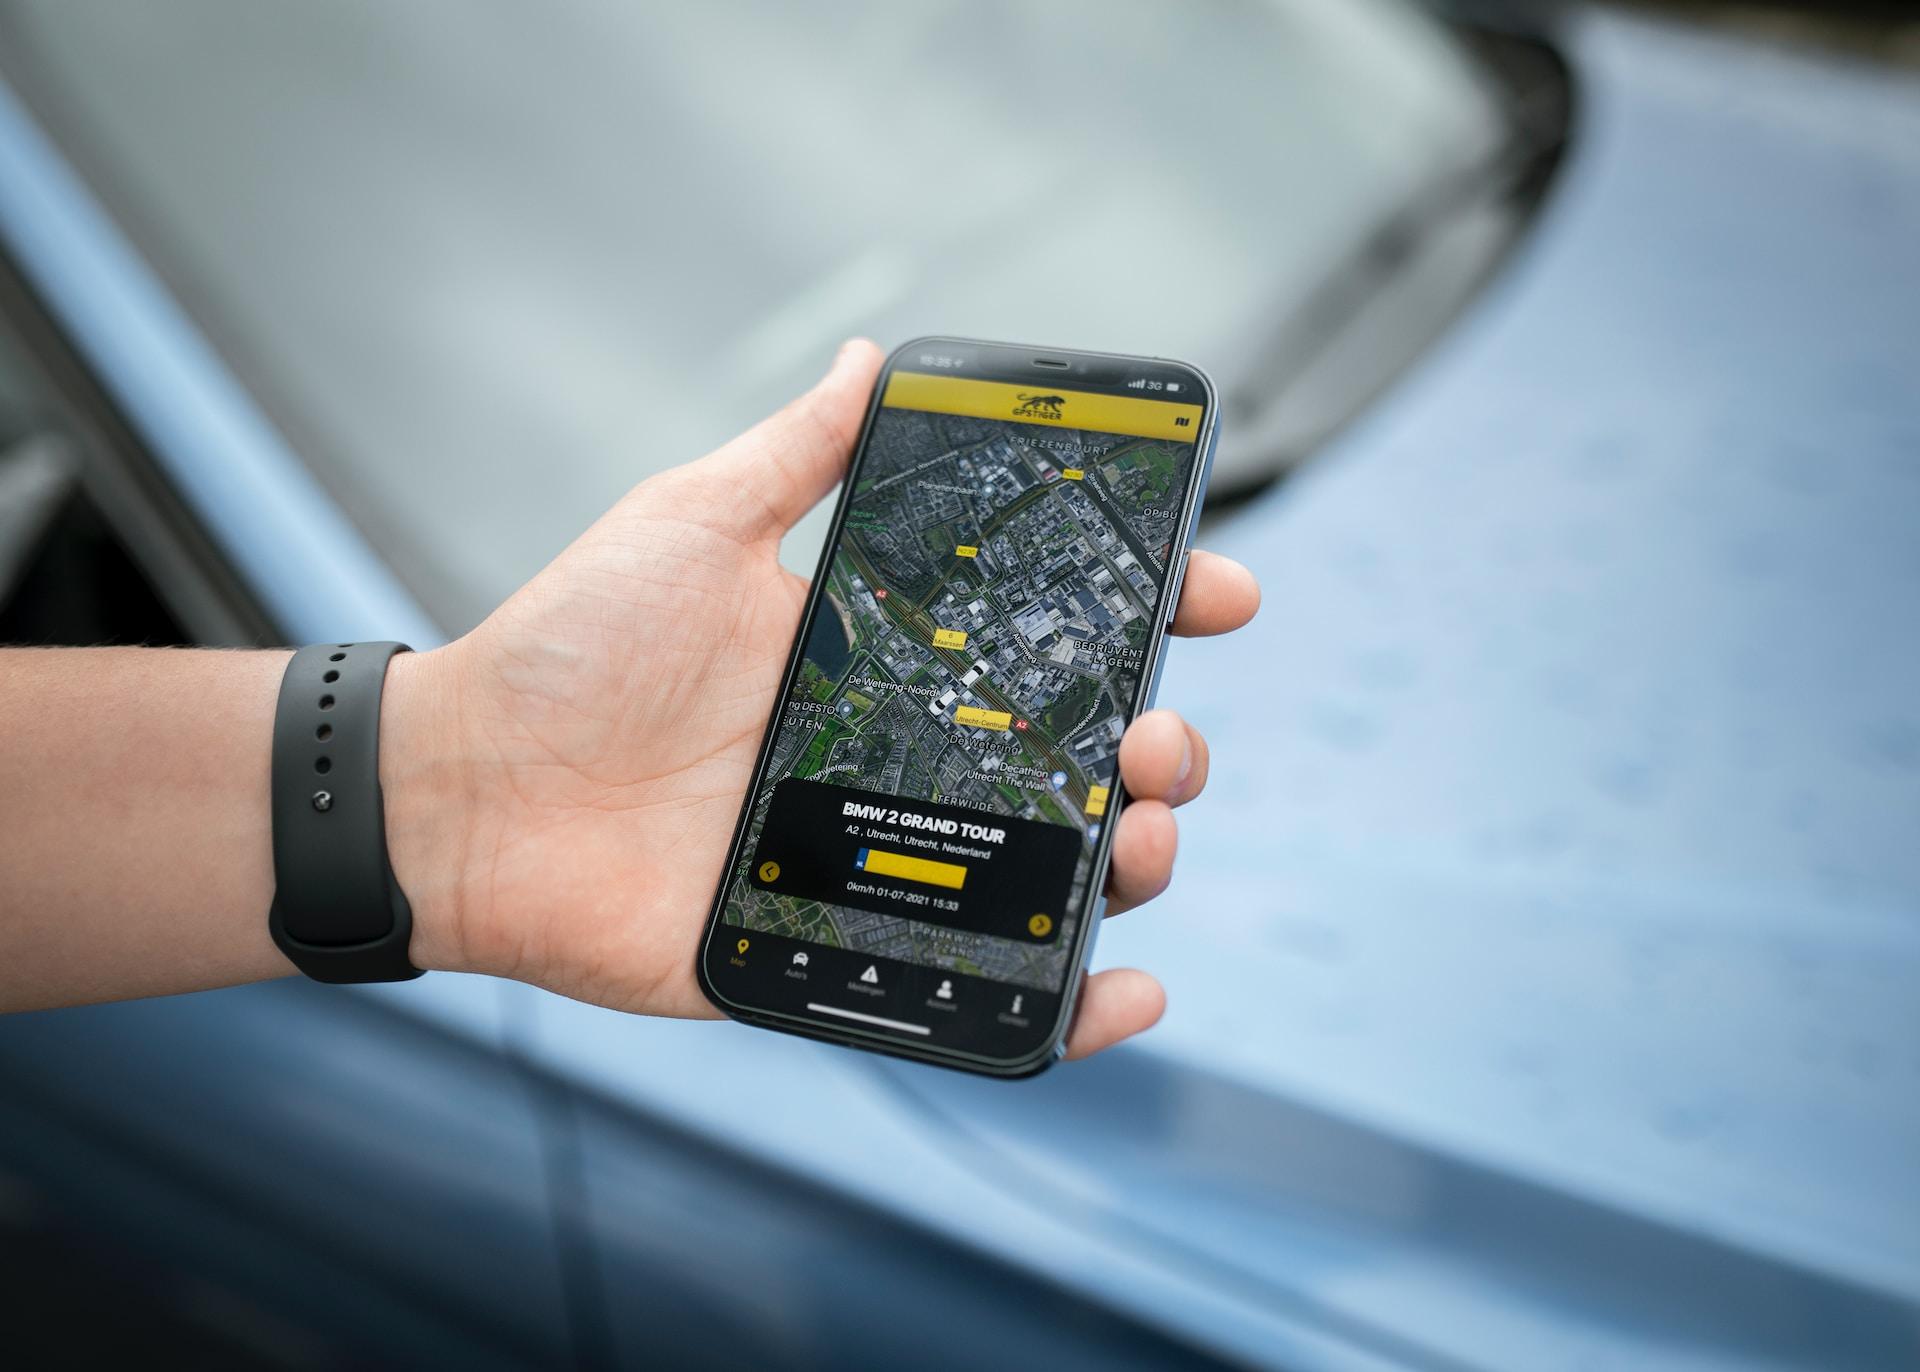 Fuhrparkmanagement mit GPS Tracker